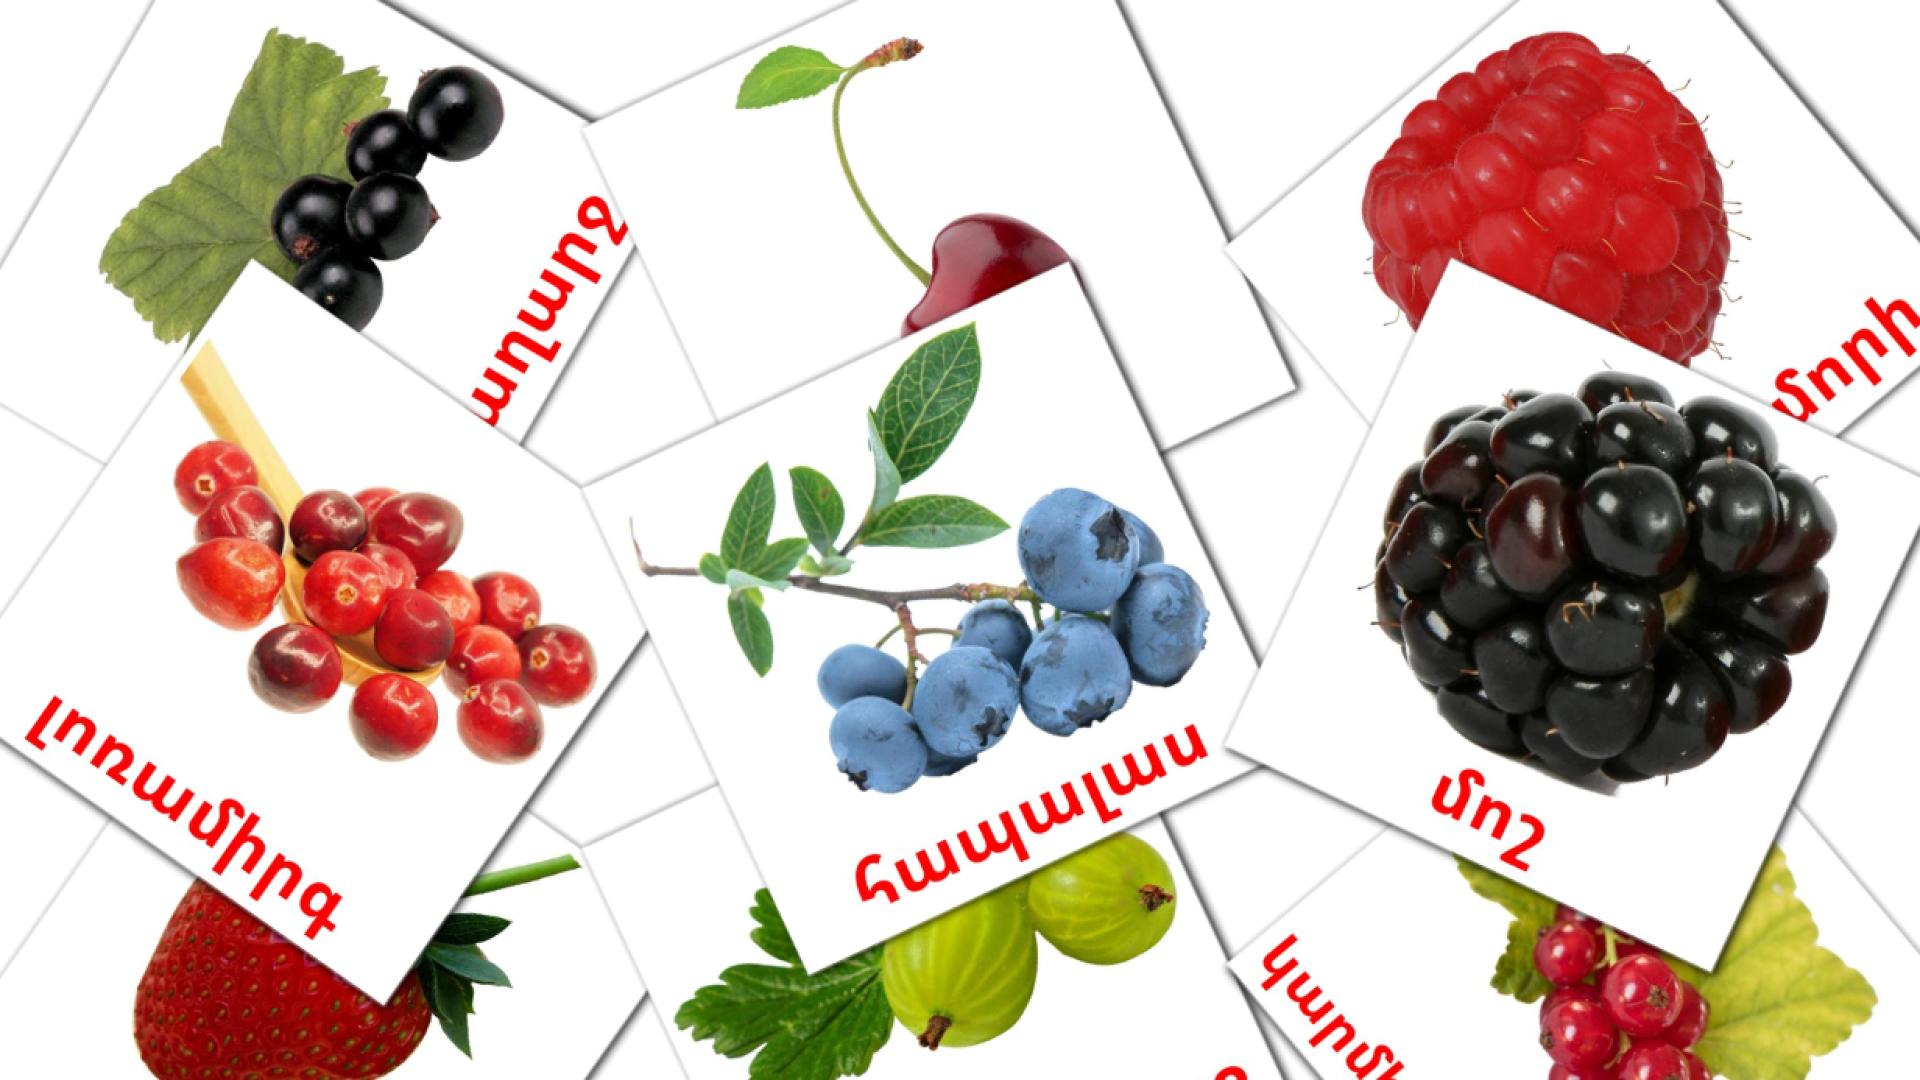 Frutti di bosco - Schede di vocabolario armeno